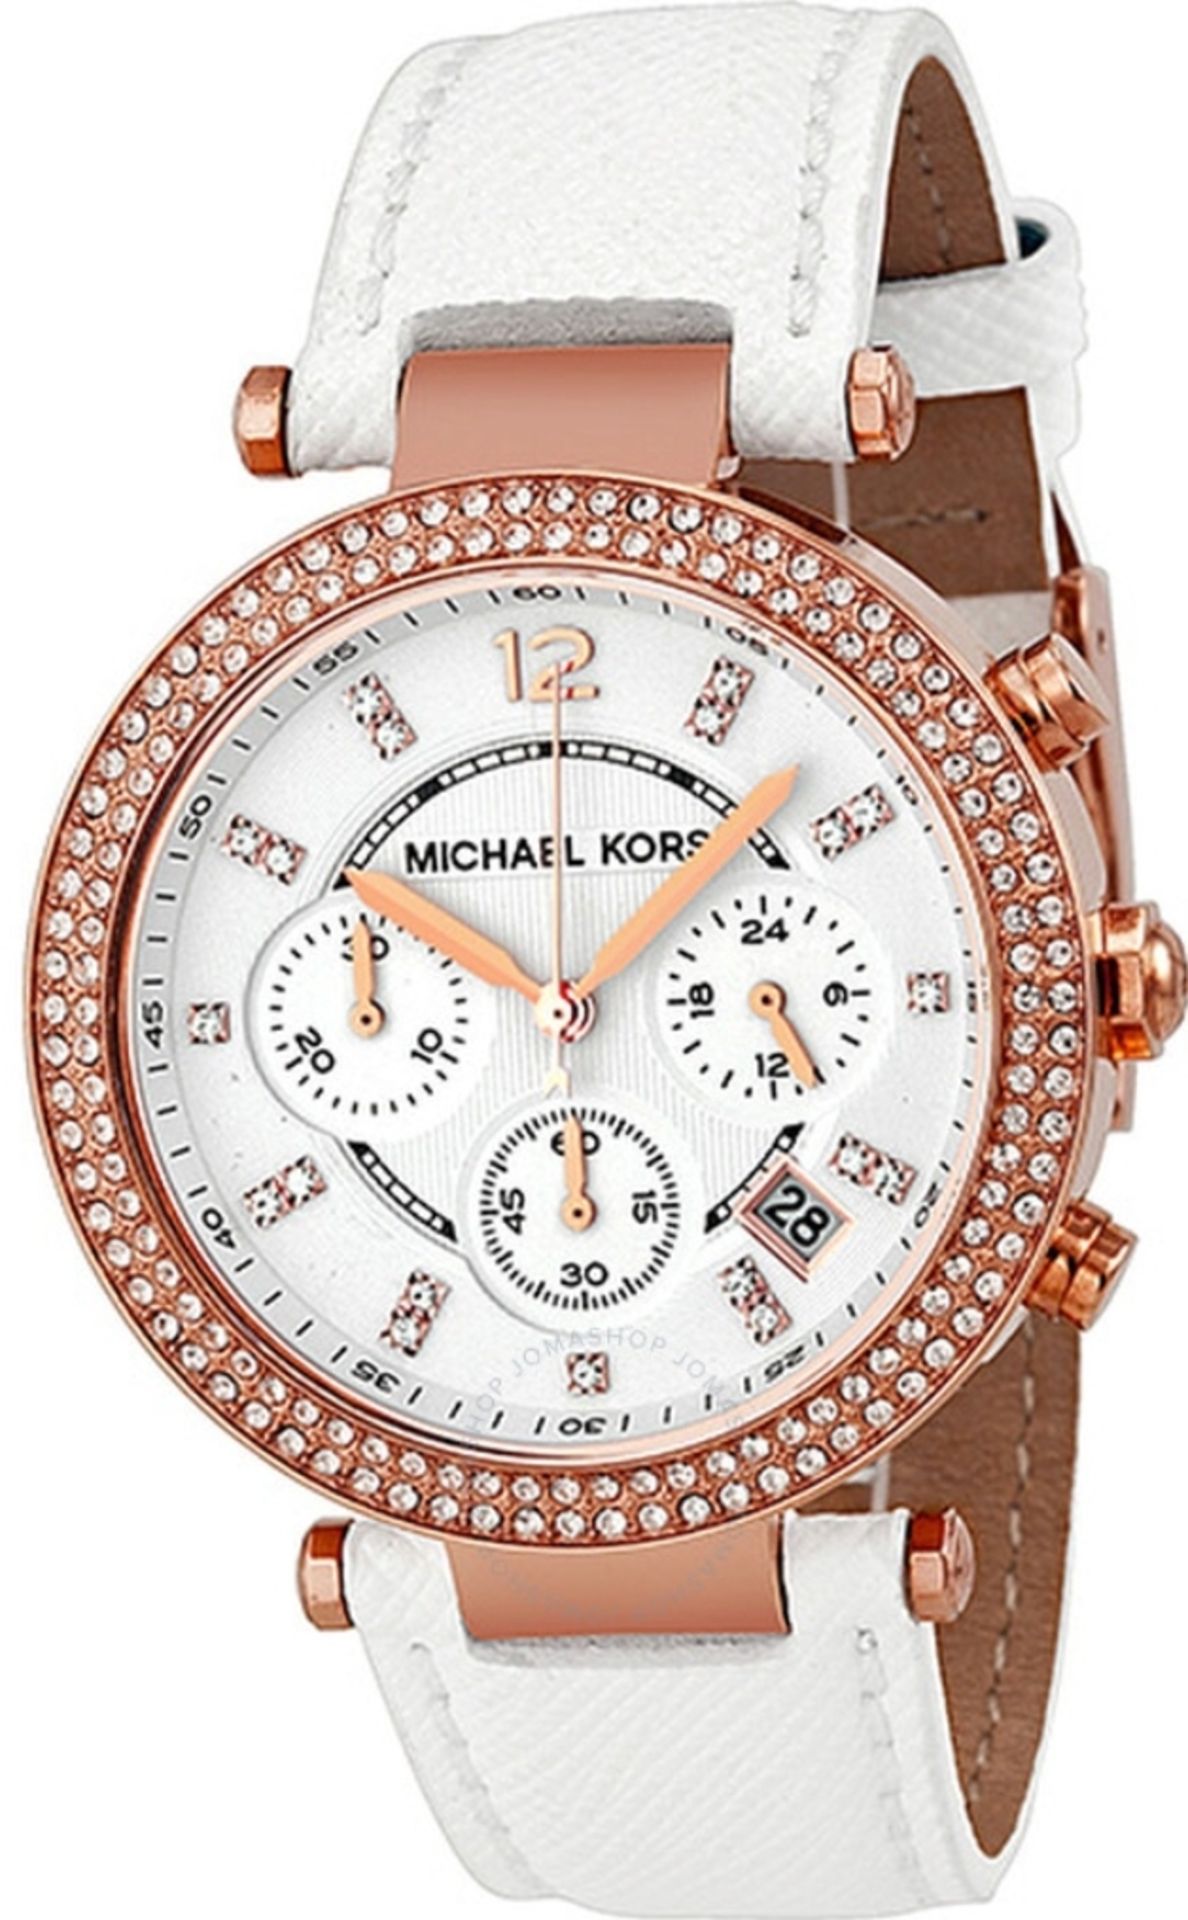 Michael Kors MK2281 Ladies Parker Chronograph Quartz Watch - Image 2 of 10